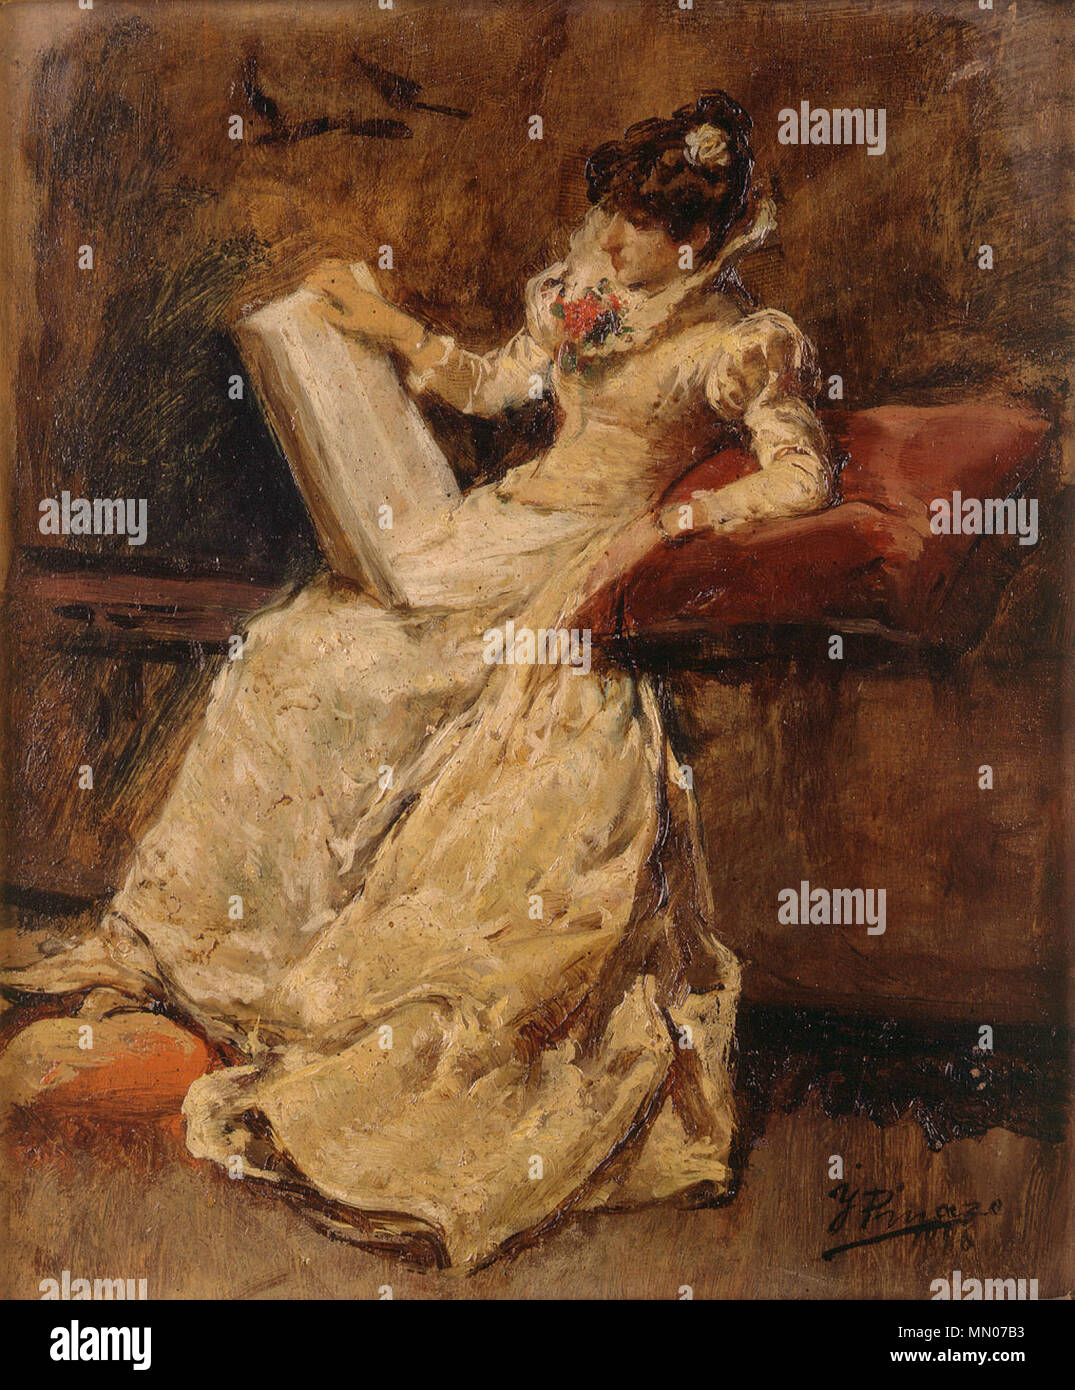 Spanish: Figura femenina sentada. 1880. Ignacio Pinazo Camarlench Figura femenina sentada Stock Photo